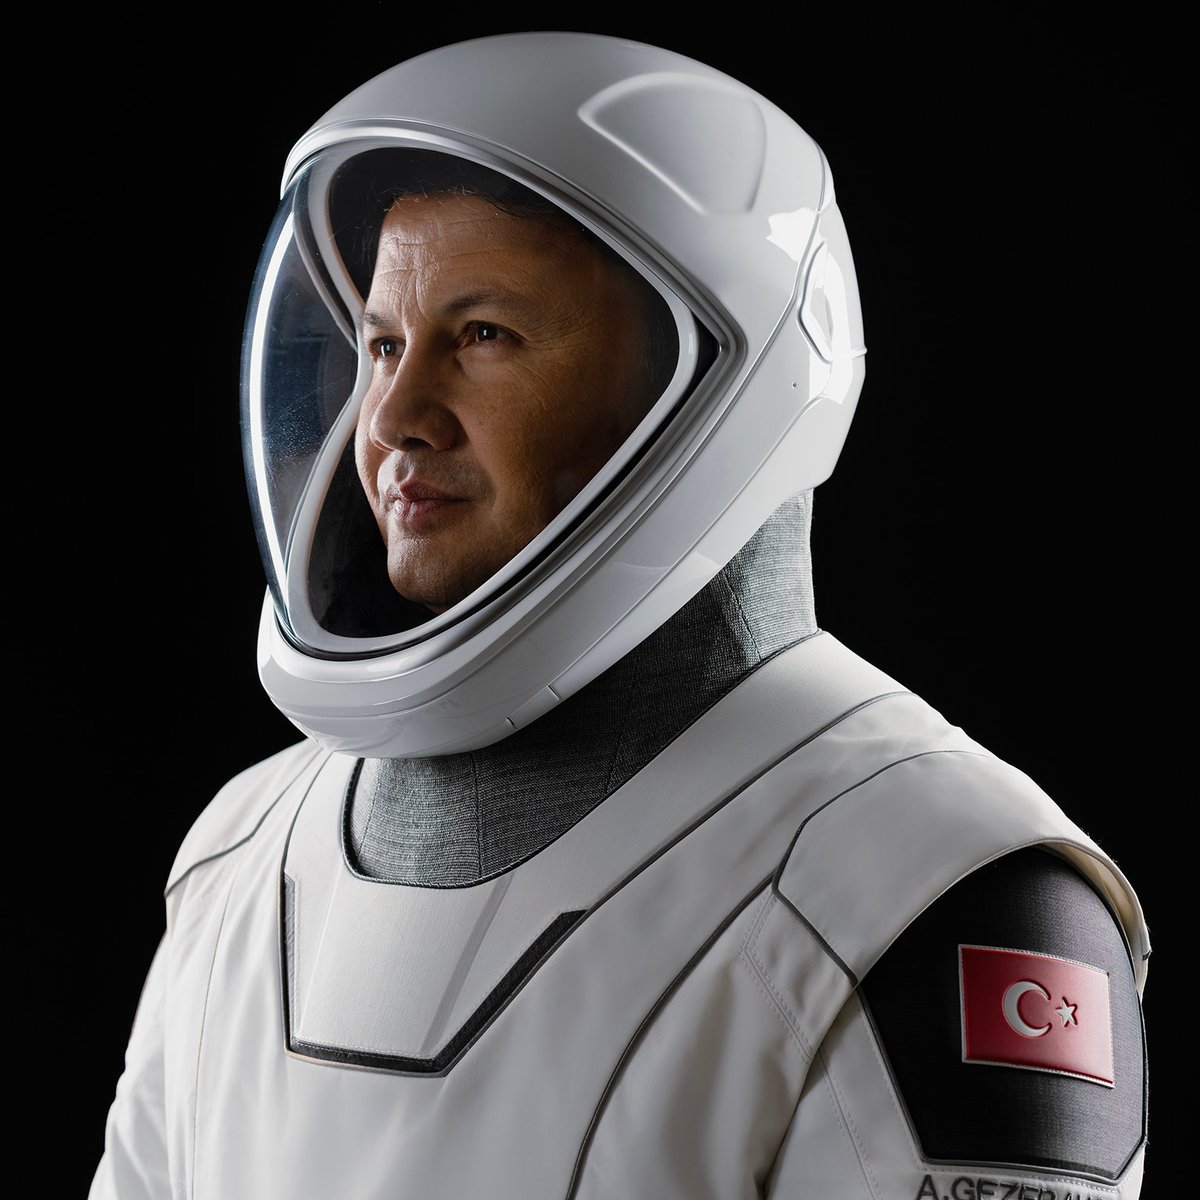 turkiyenin-ilk-astronotu-alper-gezeravcinin-uzay-yolculugu-basladi.jpeg